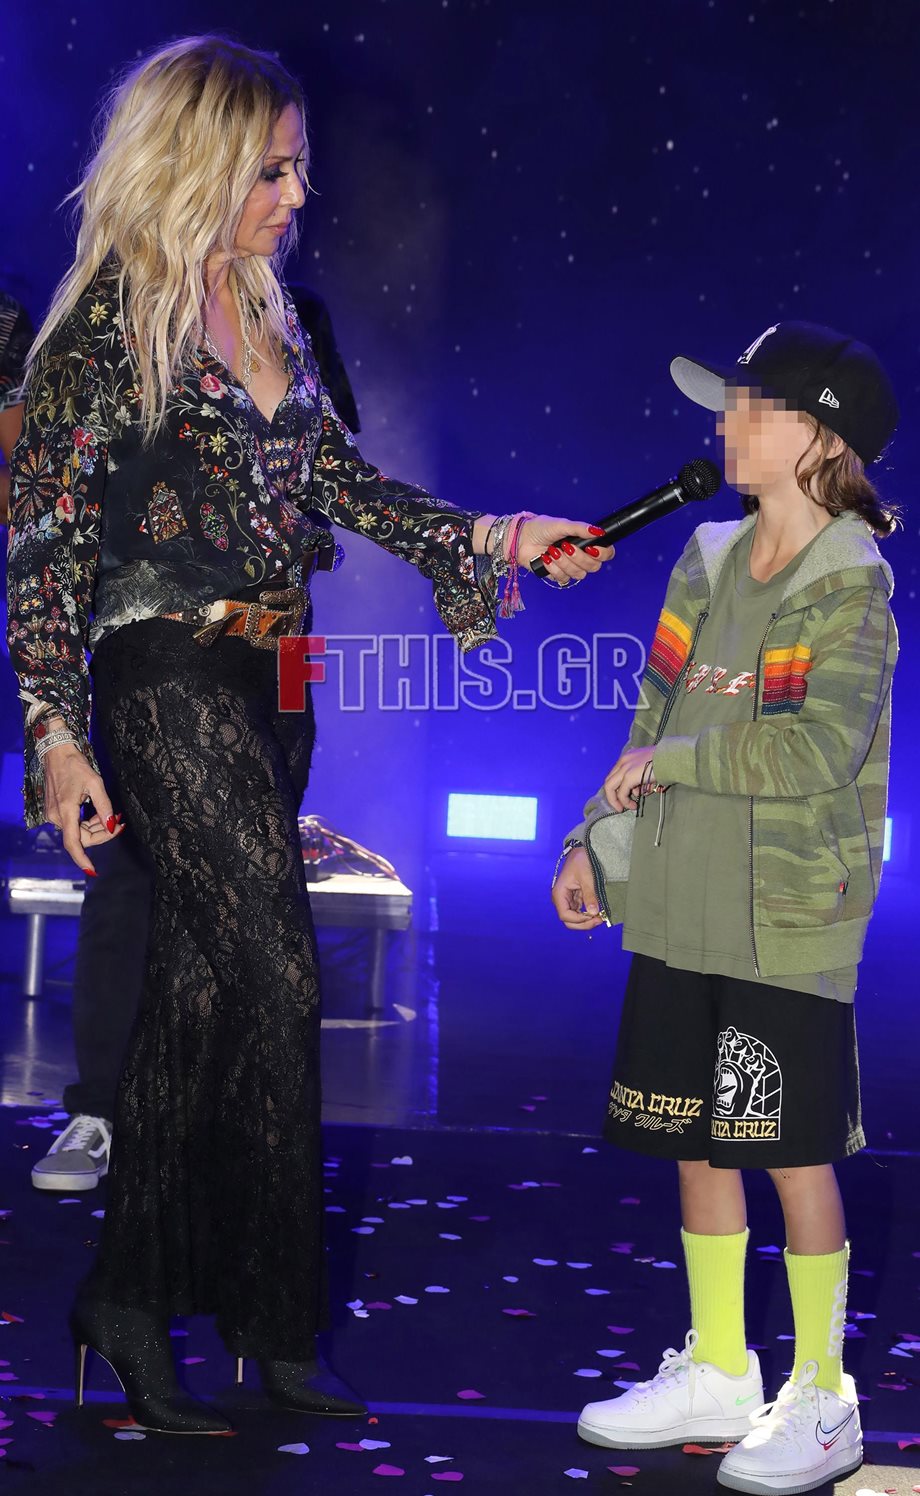  Άννα Βίσση: Τραγούδησε στη συναυλία της μαζί με τον εγγονό της – Το κοινό τους αποθέωσε (Φωτογραφίες)